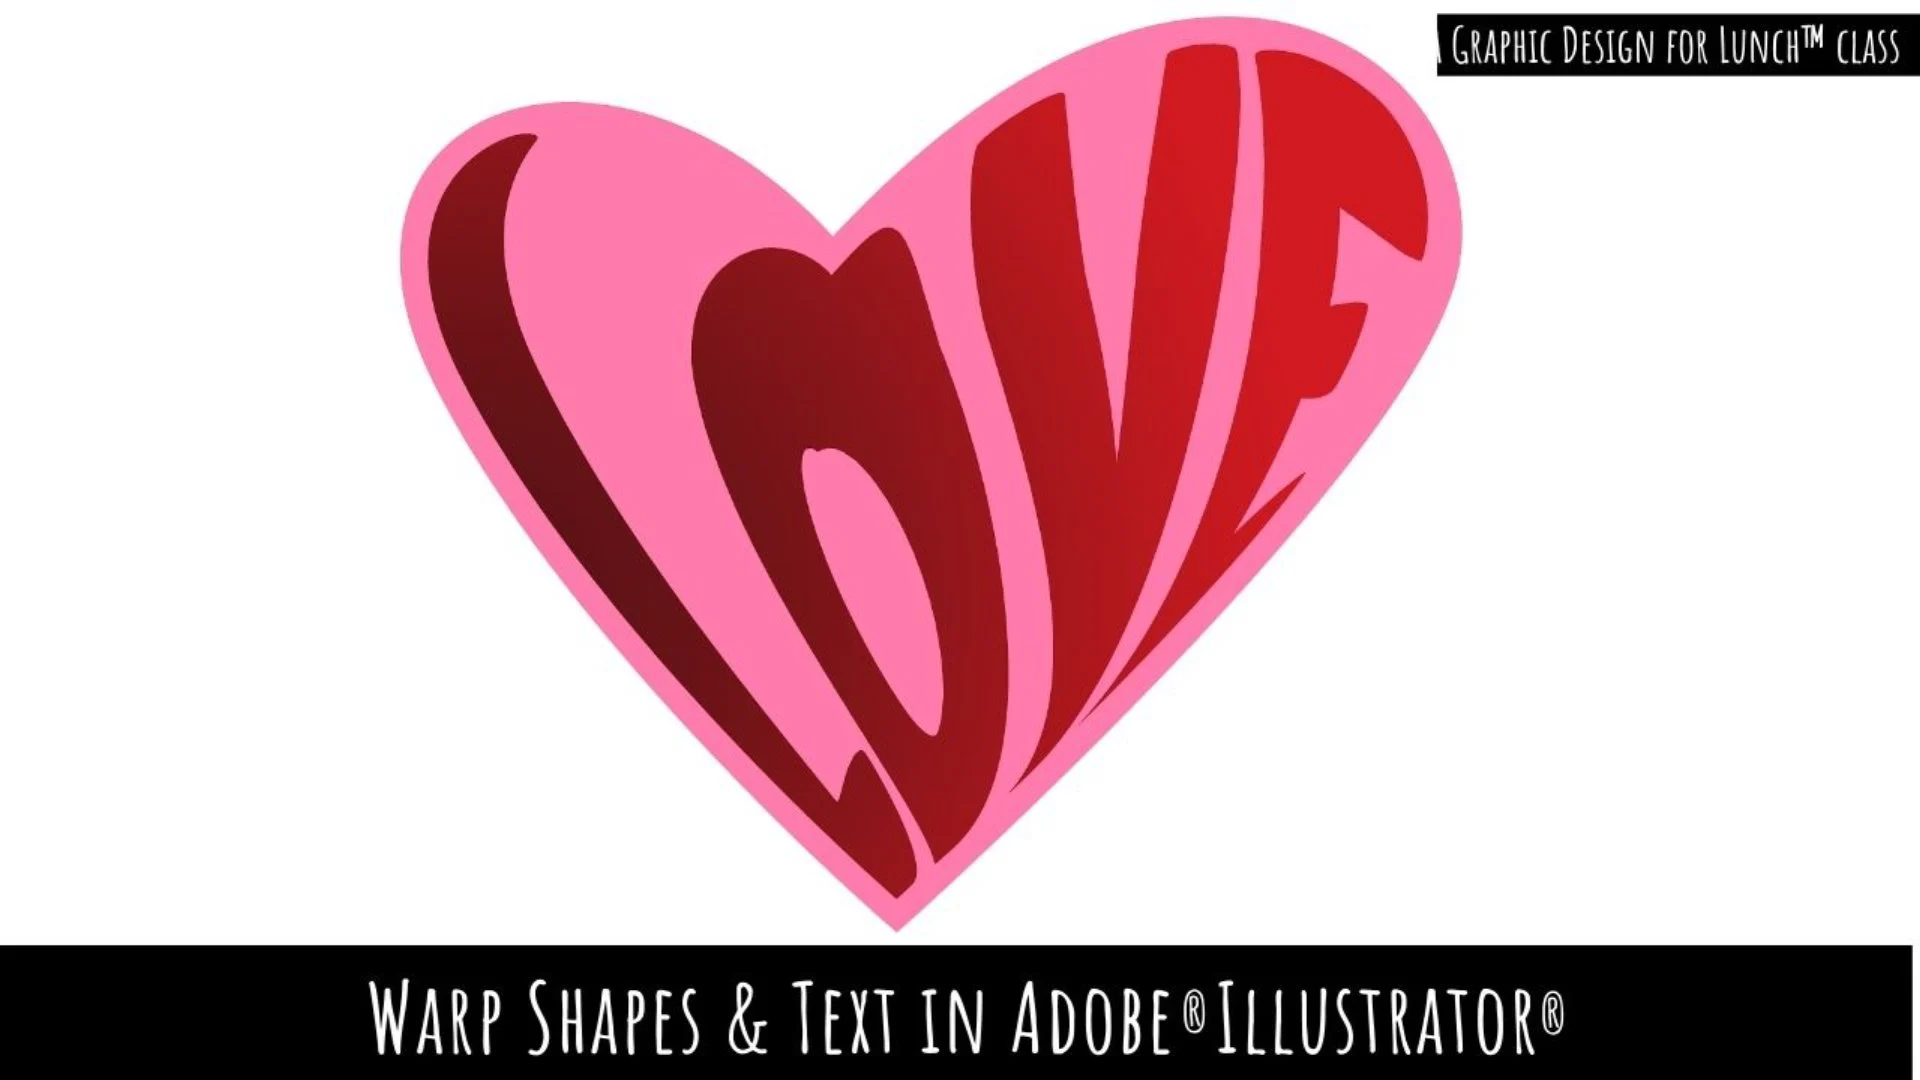 آموزش شکل‌ها و متن را در Adobe Illustrator تغییر دهید - طراحی گرافیکی برای کلاس ناهار